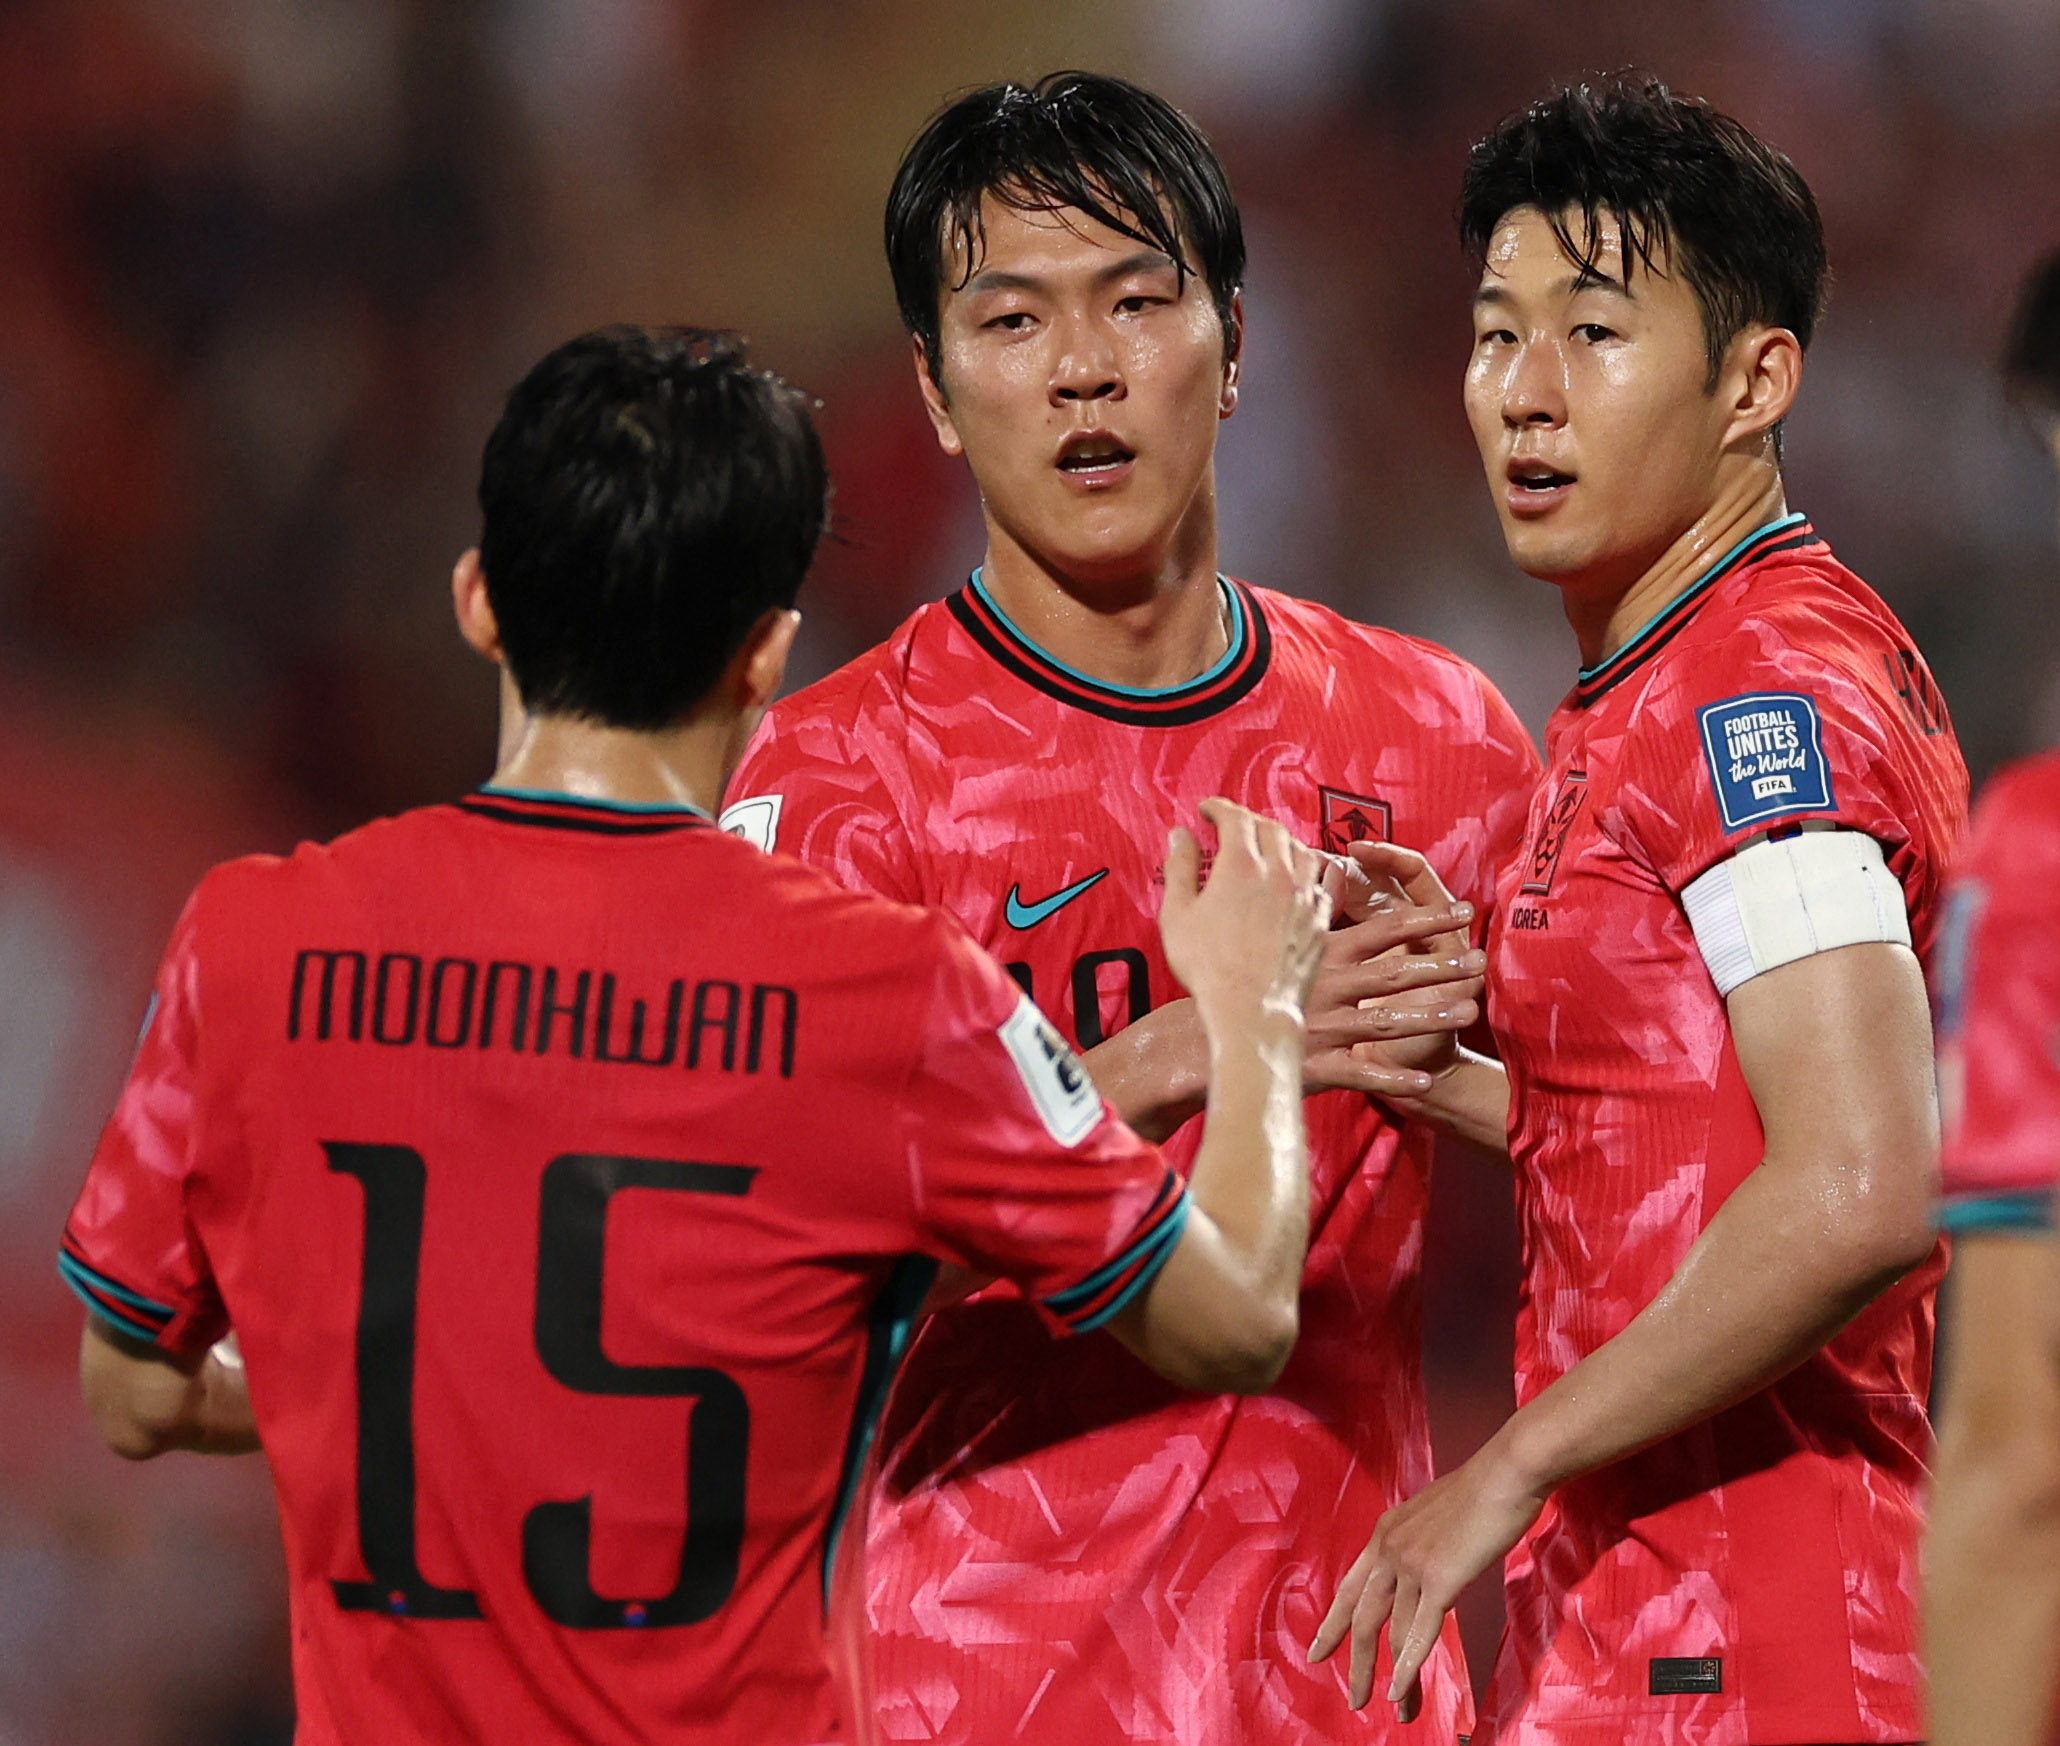 El entrenador Troussier y Klinsmann, es extraño porque tienen algo en común, el fútbol vietnamita debería mirar a Corea - Foto 2.